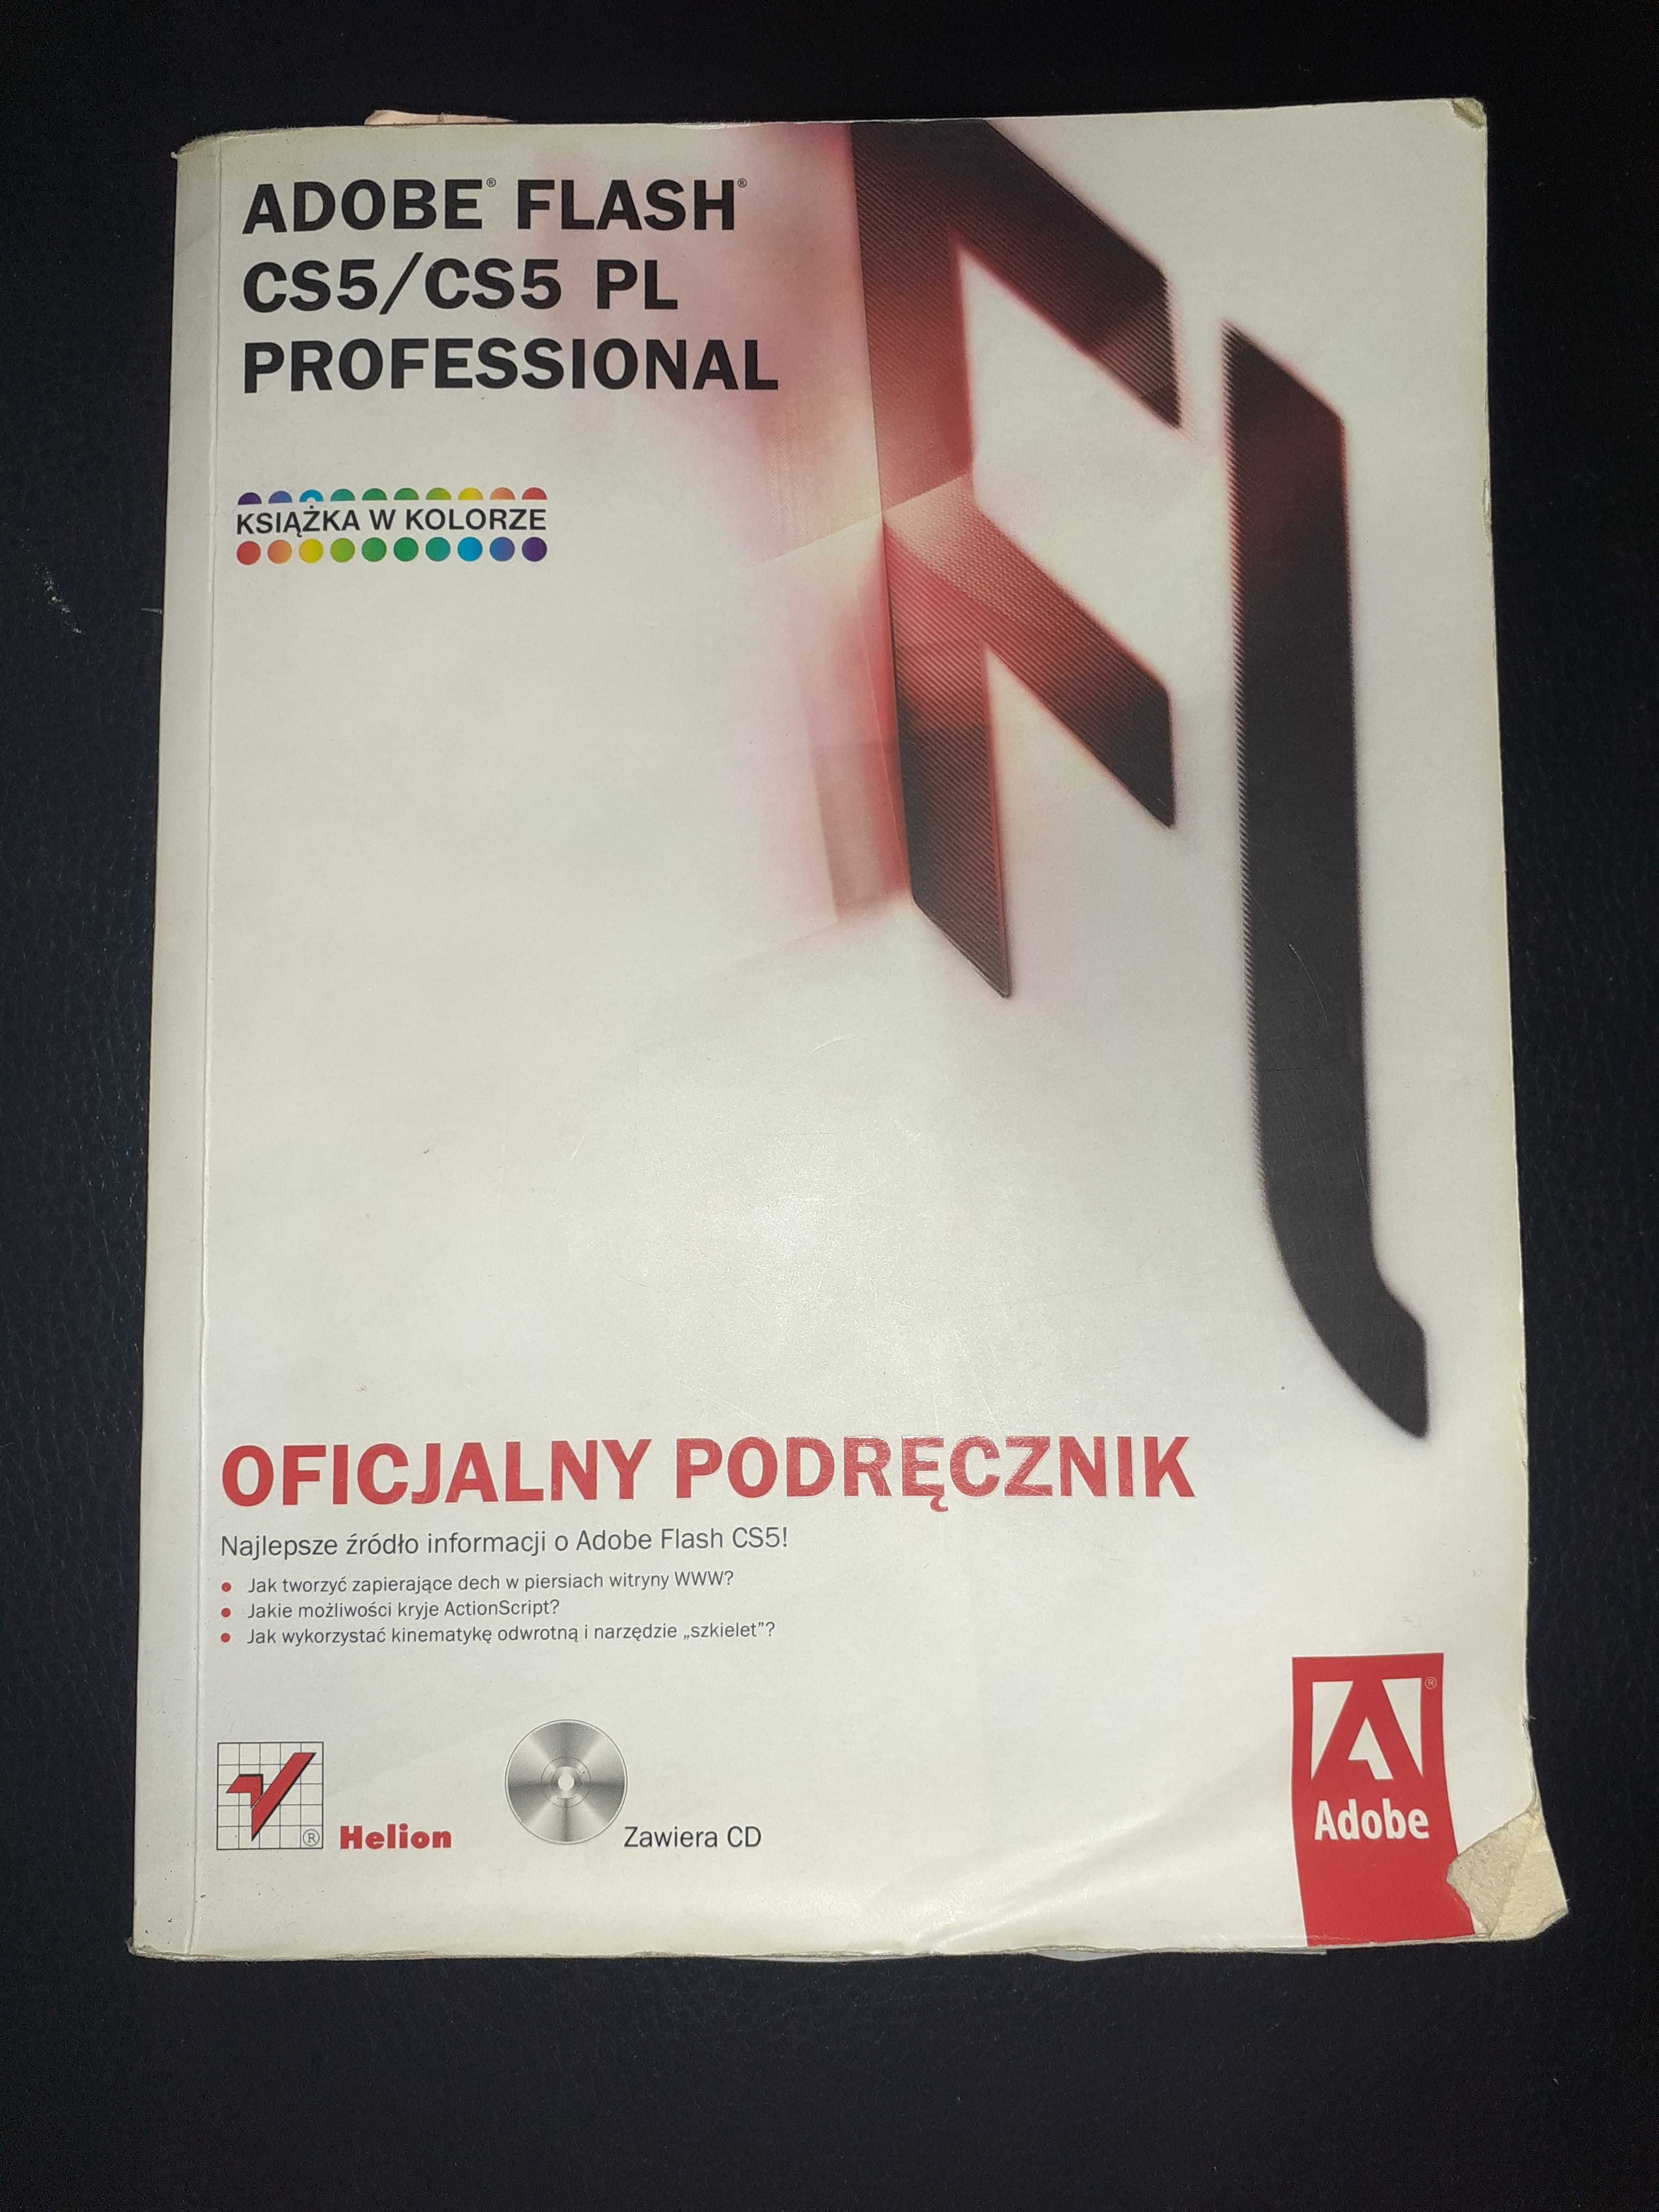 Adobe Flash CS5 Professhional - oficjalny podręcznik PL + Płyta CD!